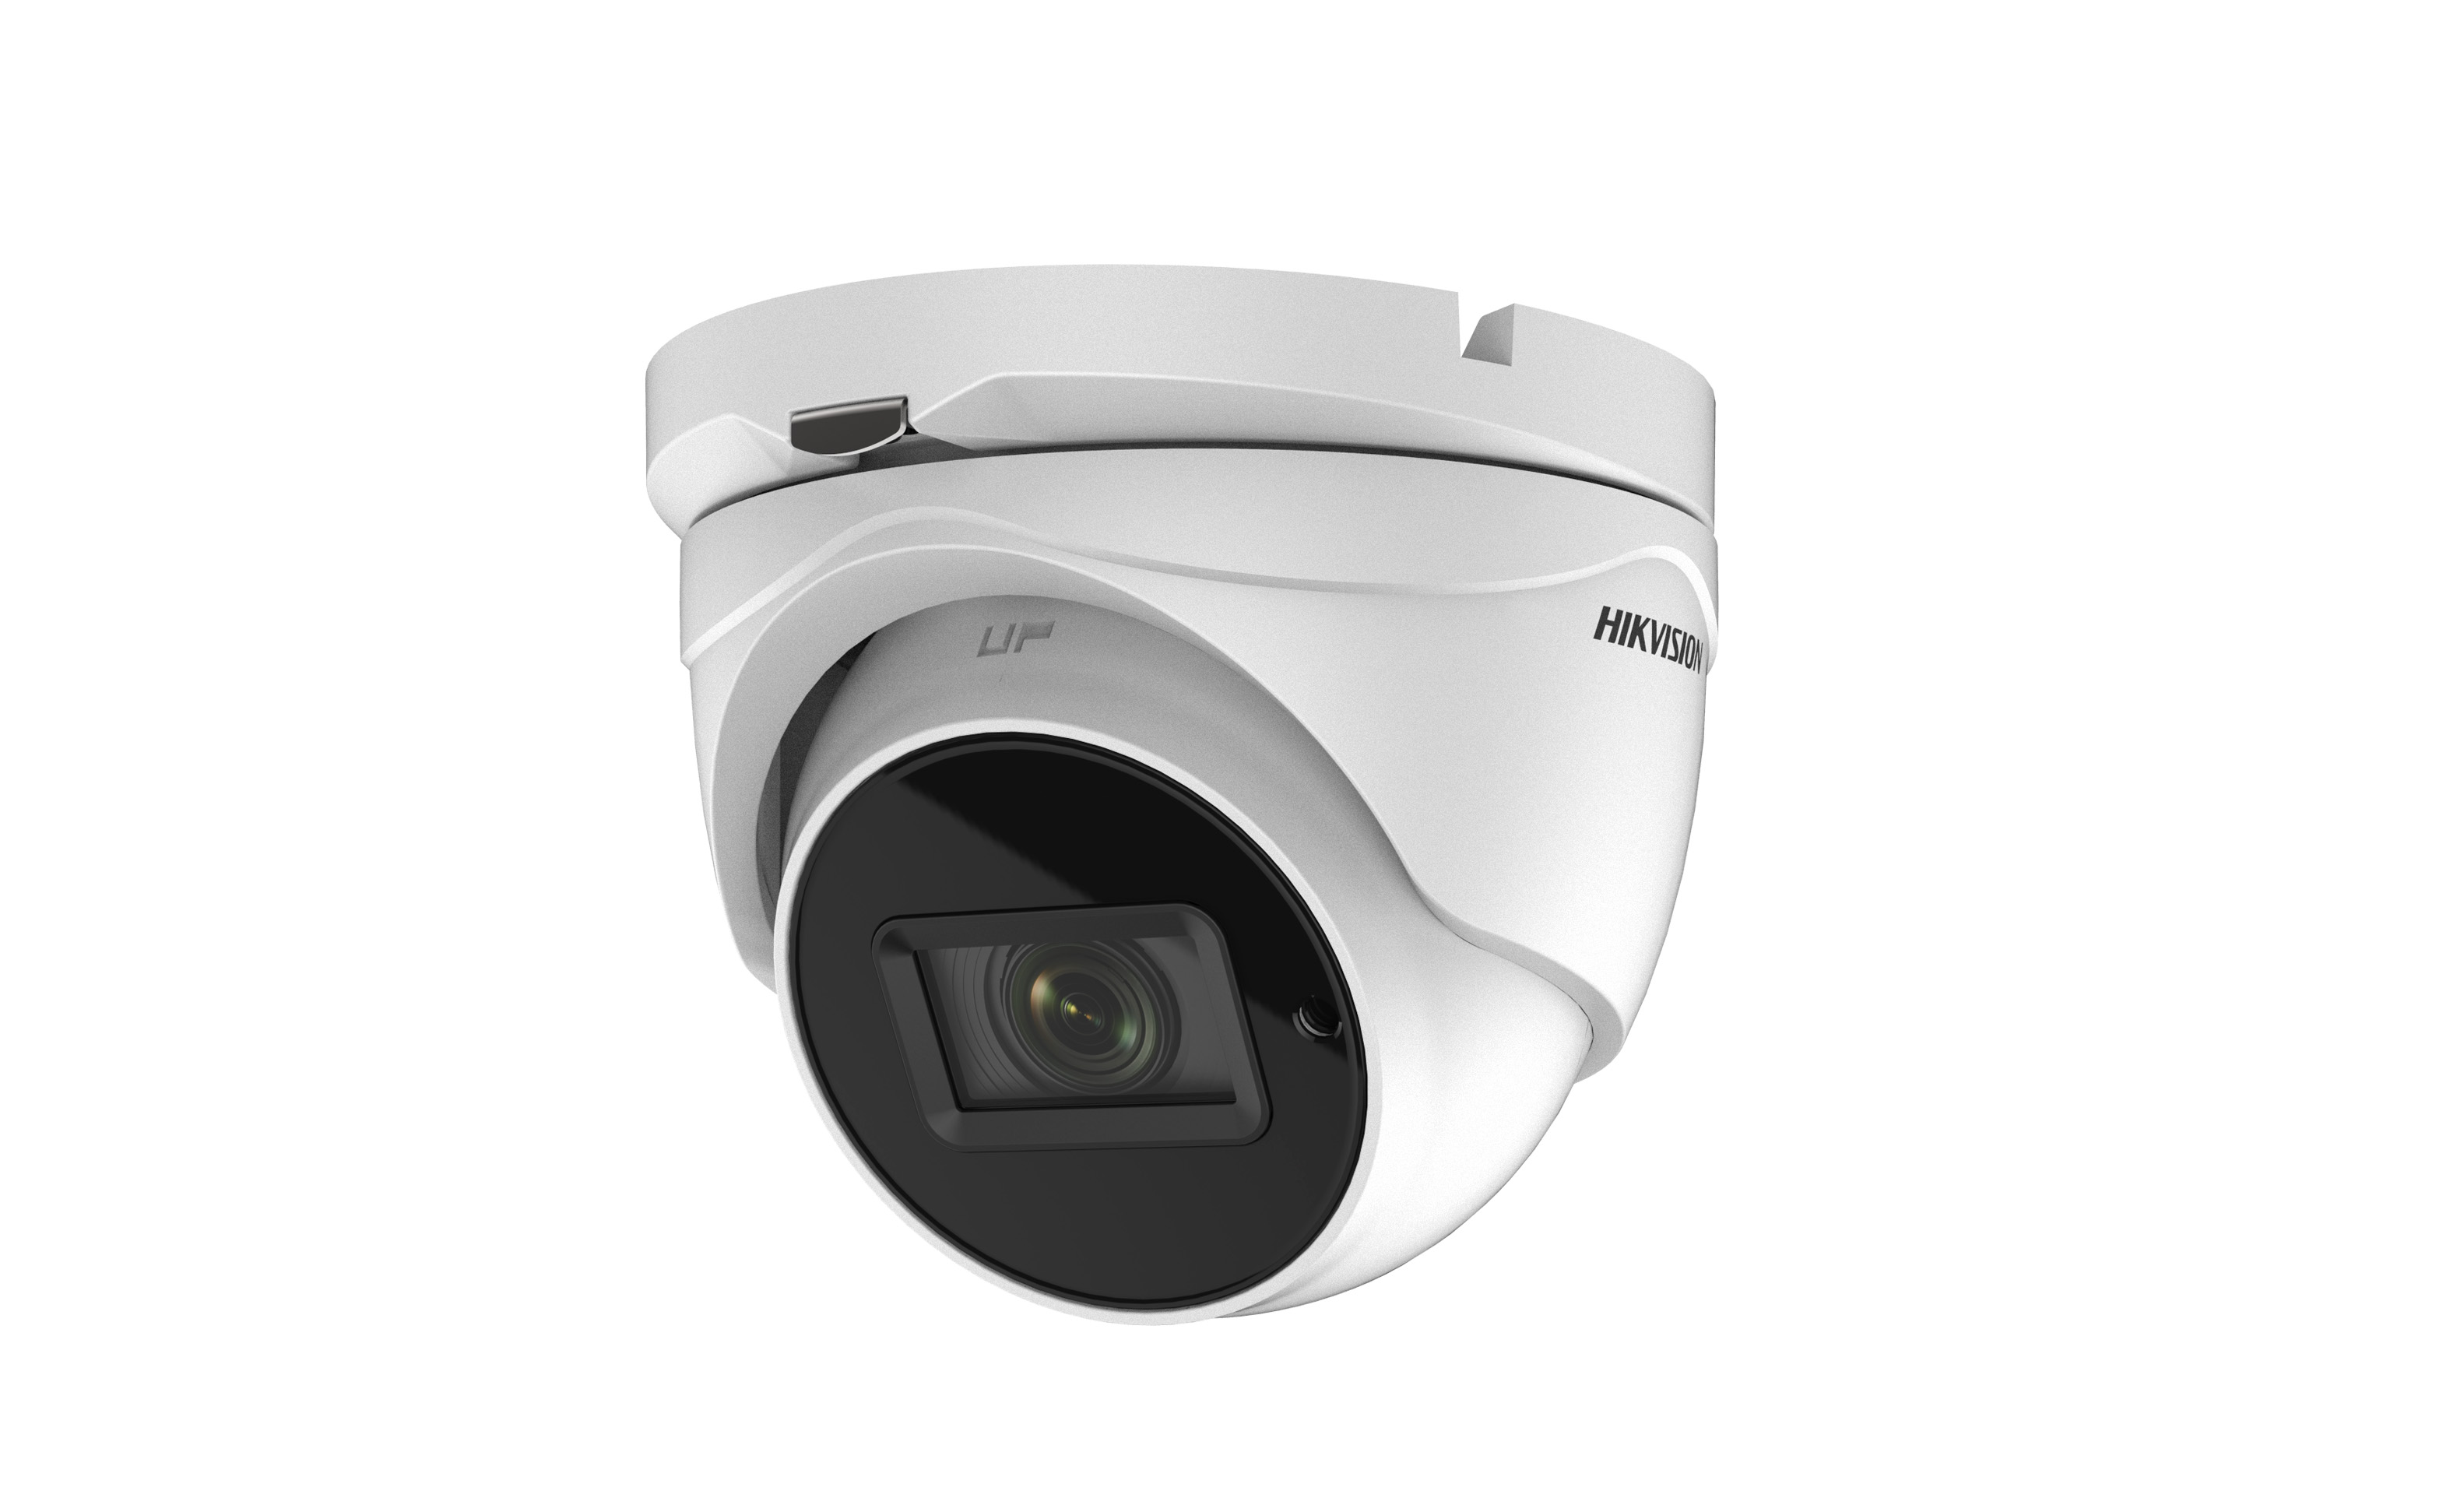 Hikvision DS-2CE79H8T-IT3ZF 2.7-13.5mm - 5MP TVI kamera u turret kućištu 4 u 1 TVI/AHD/CVI/CVBS režim.